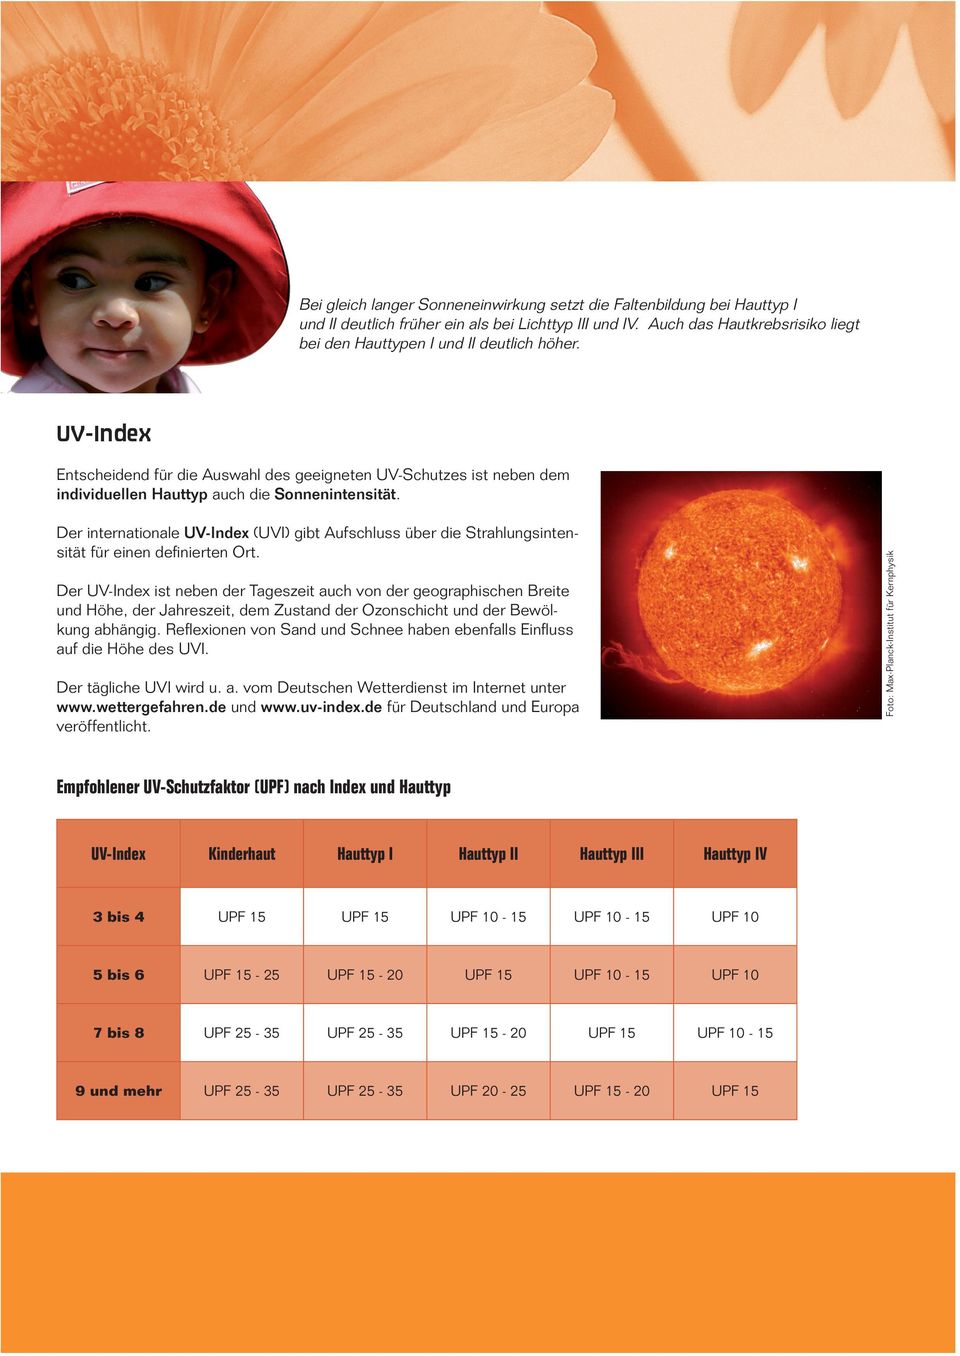 UV-Index Entscheidend für die Auswahl des geeigneten UV-Schutzes ist neben dem individuellen Hauttyp auch die Sonnenintensität.